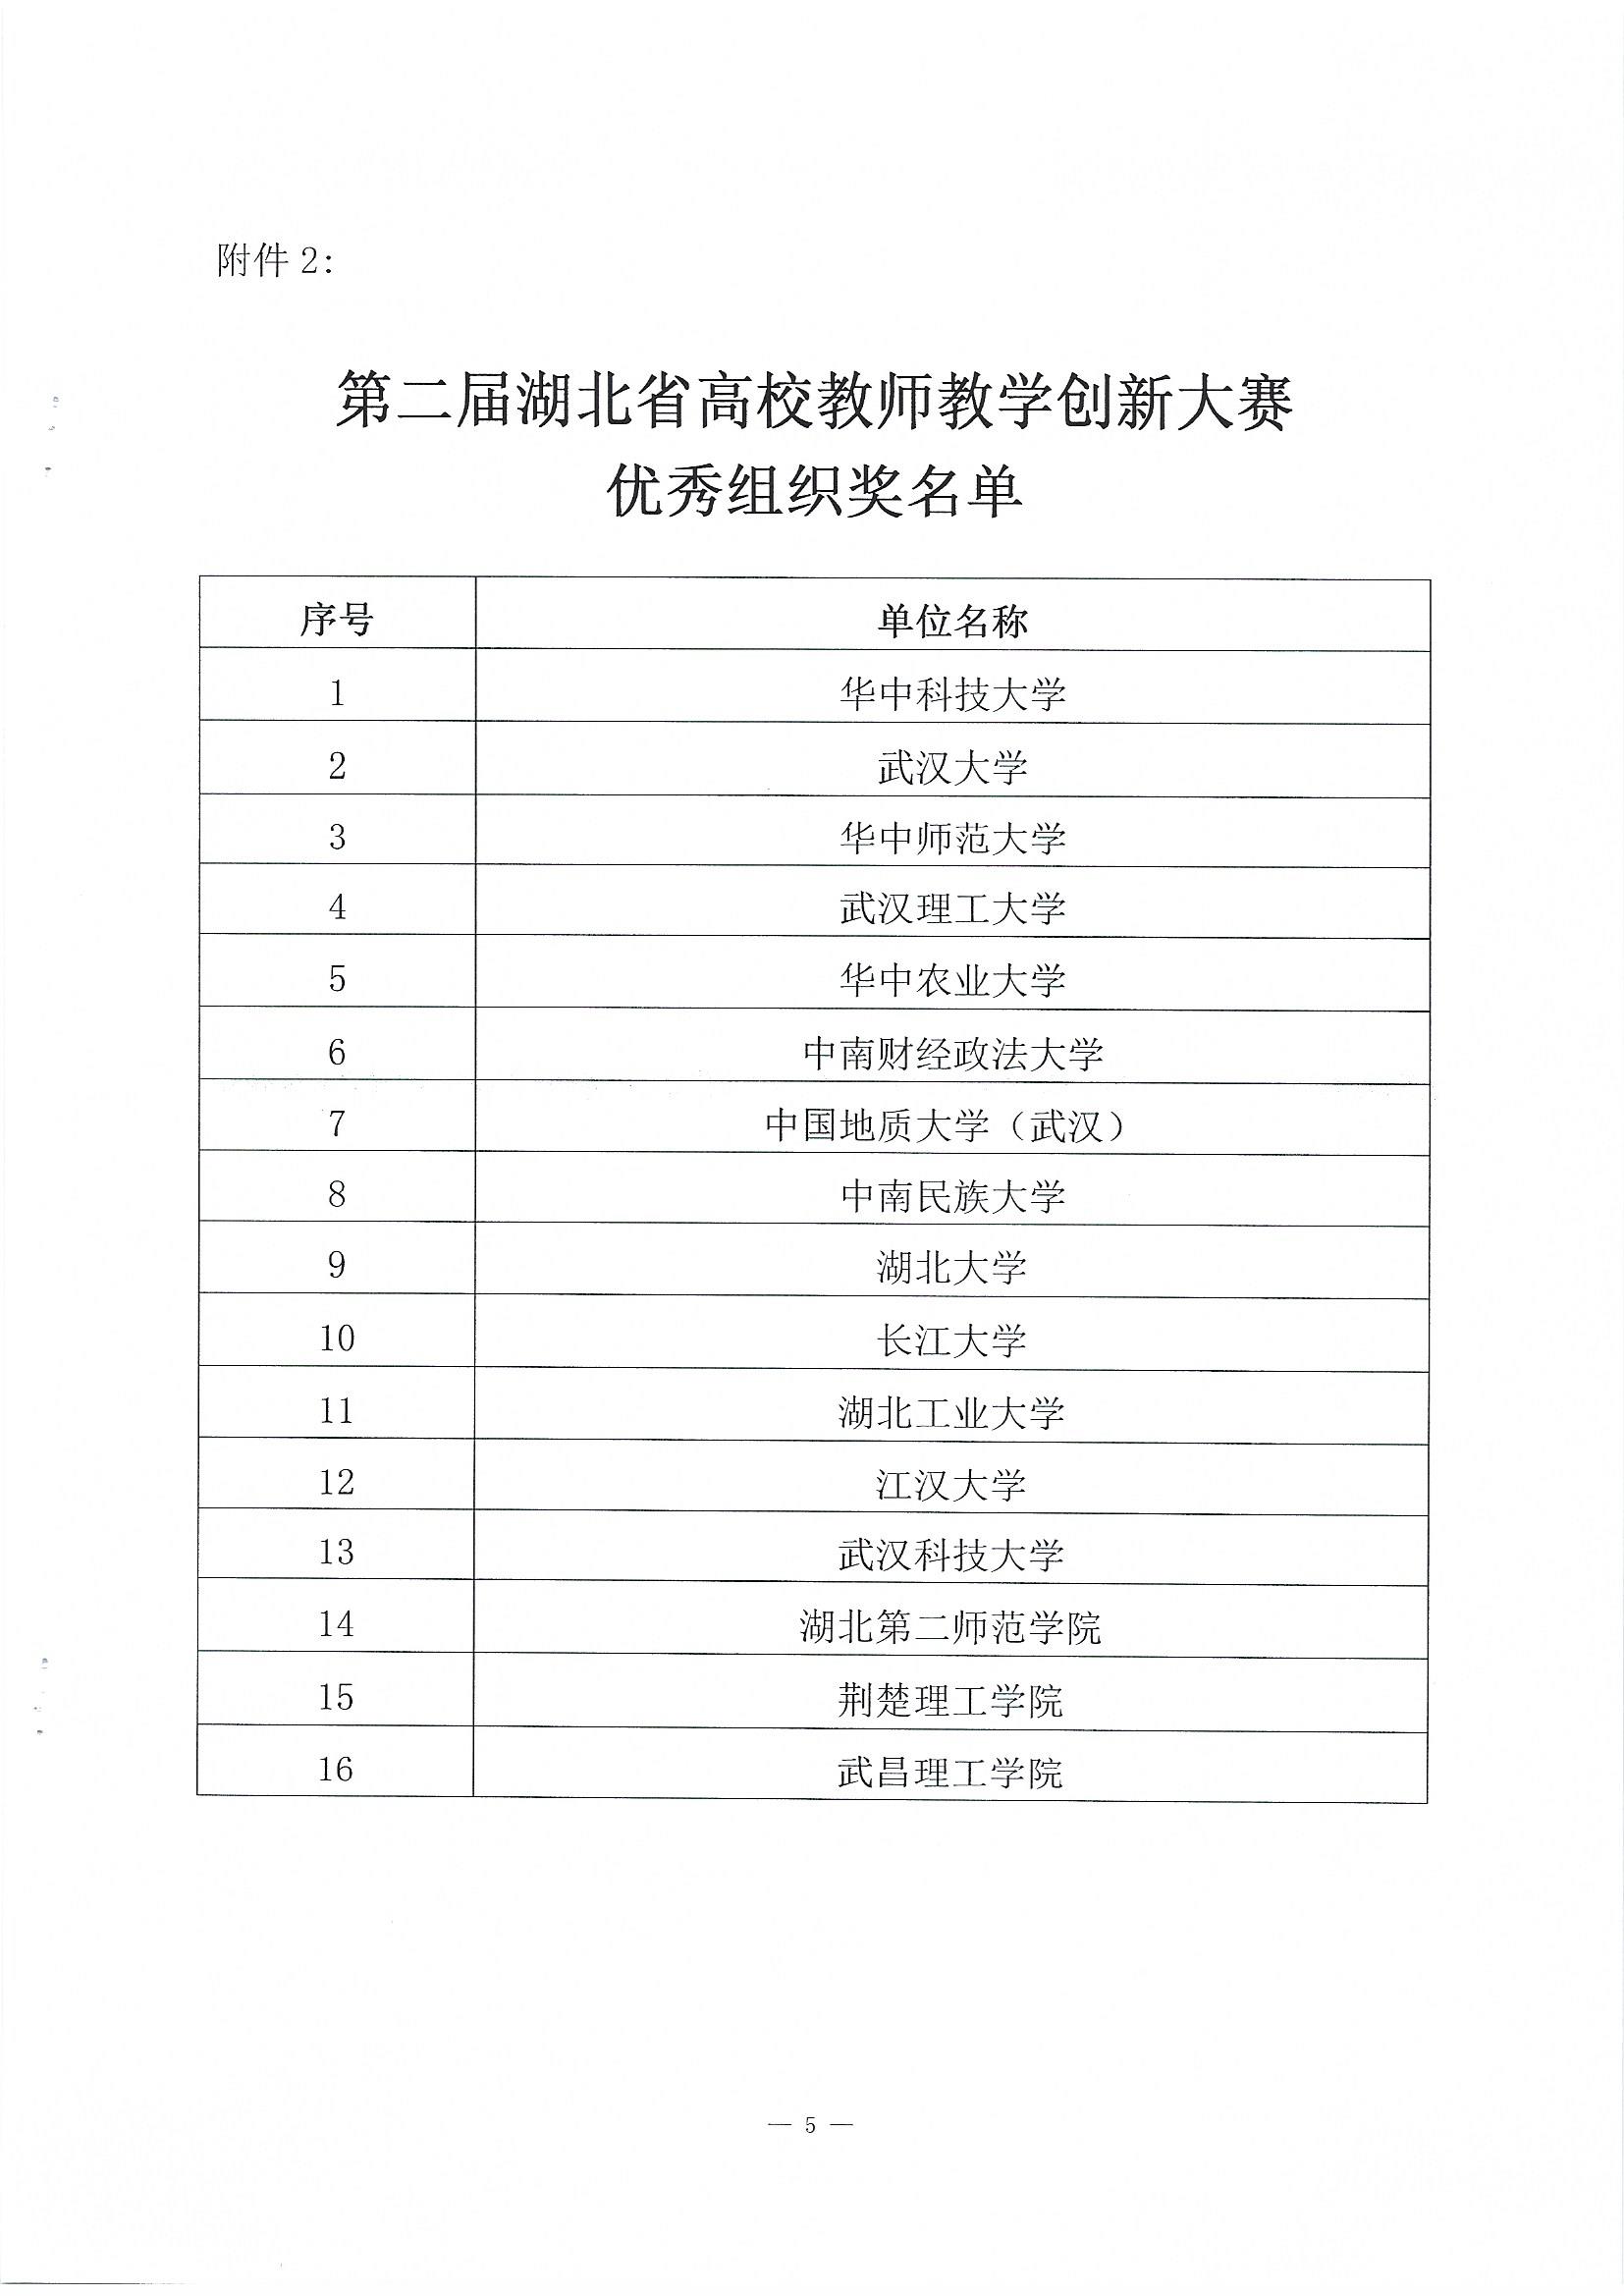 关于公布第二届湖北省高校教师教学创新大赛评审结果的通知(1)_页面_5.jpg